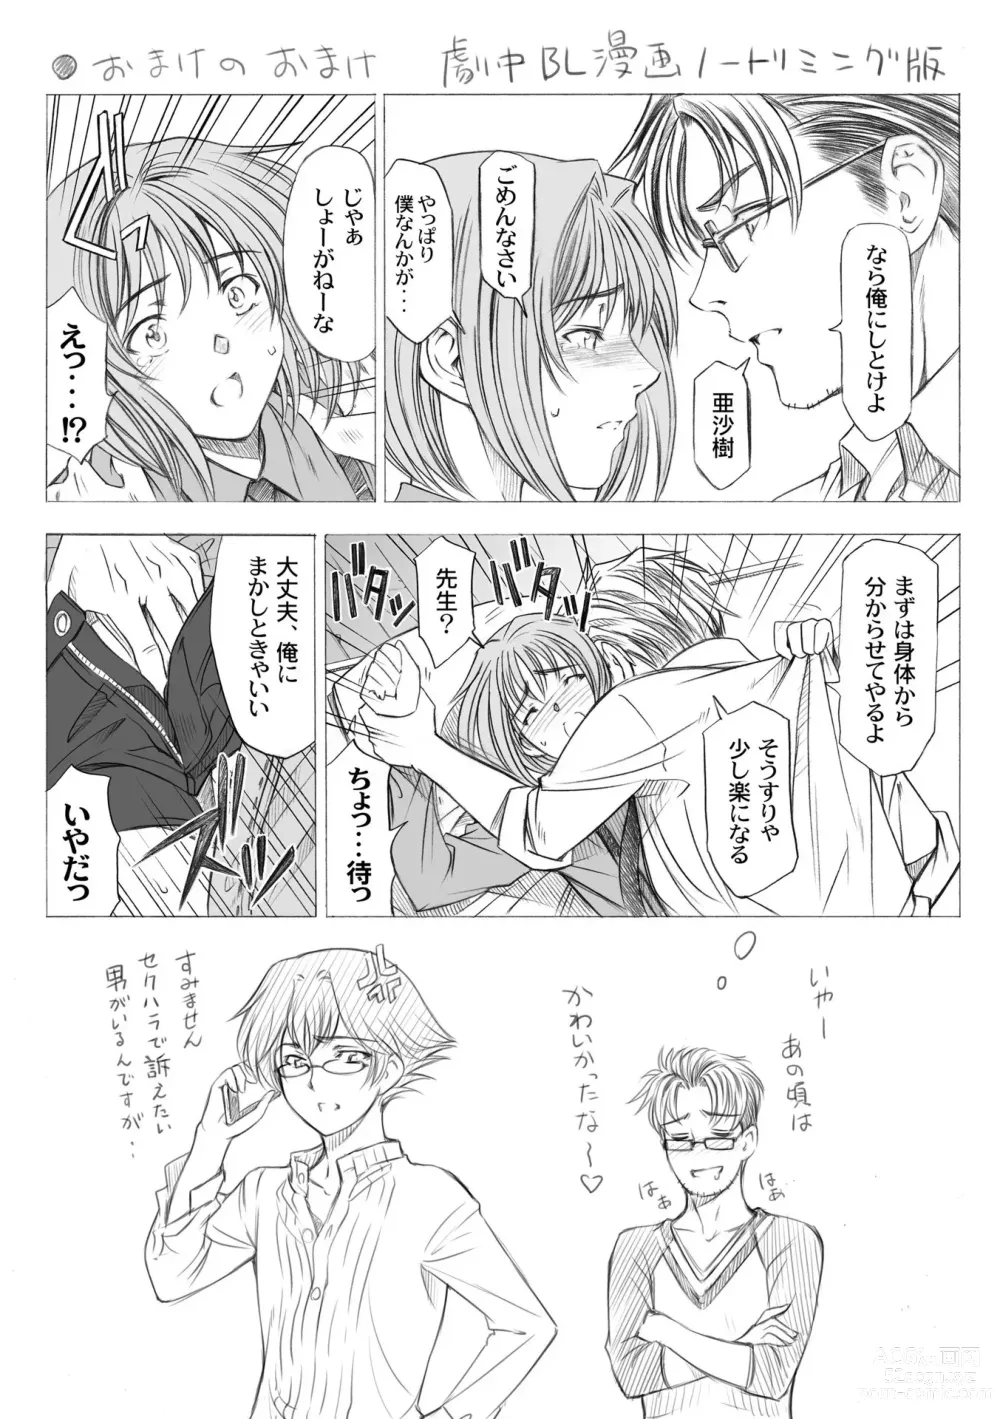 Page 244 of manga Ane wa Shota o Suki ni Naru